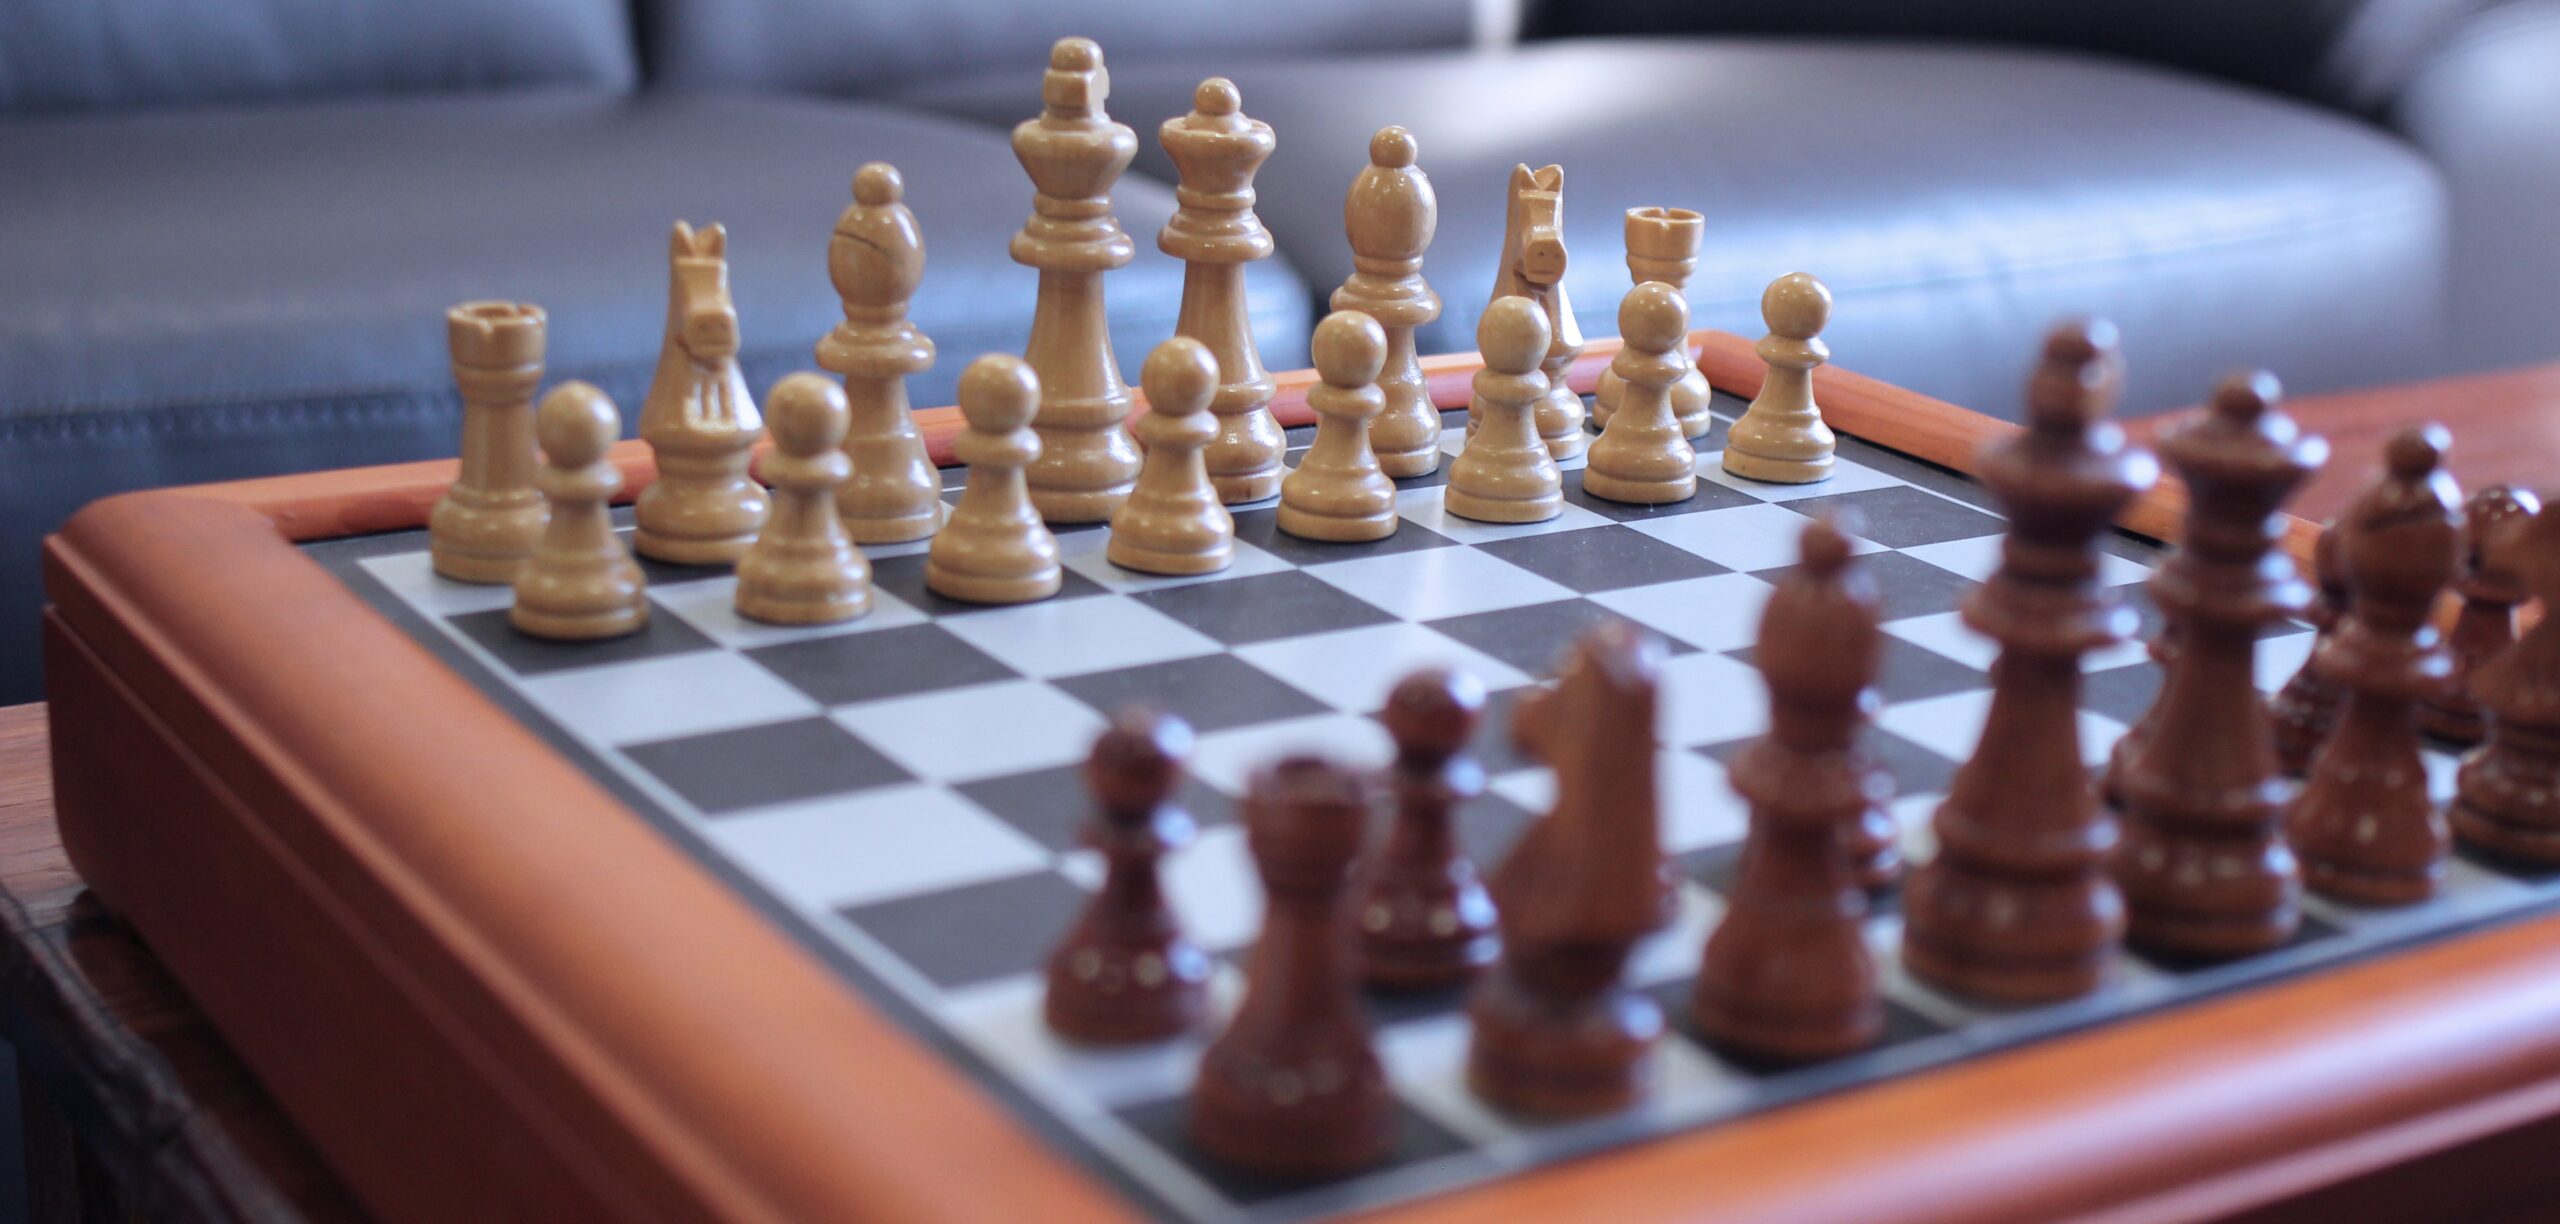 Embarking on Chess Battles